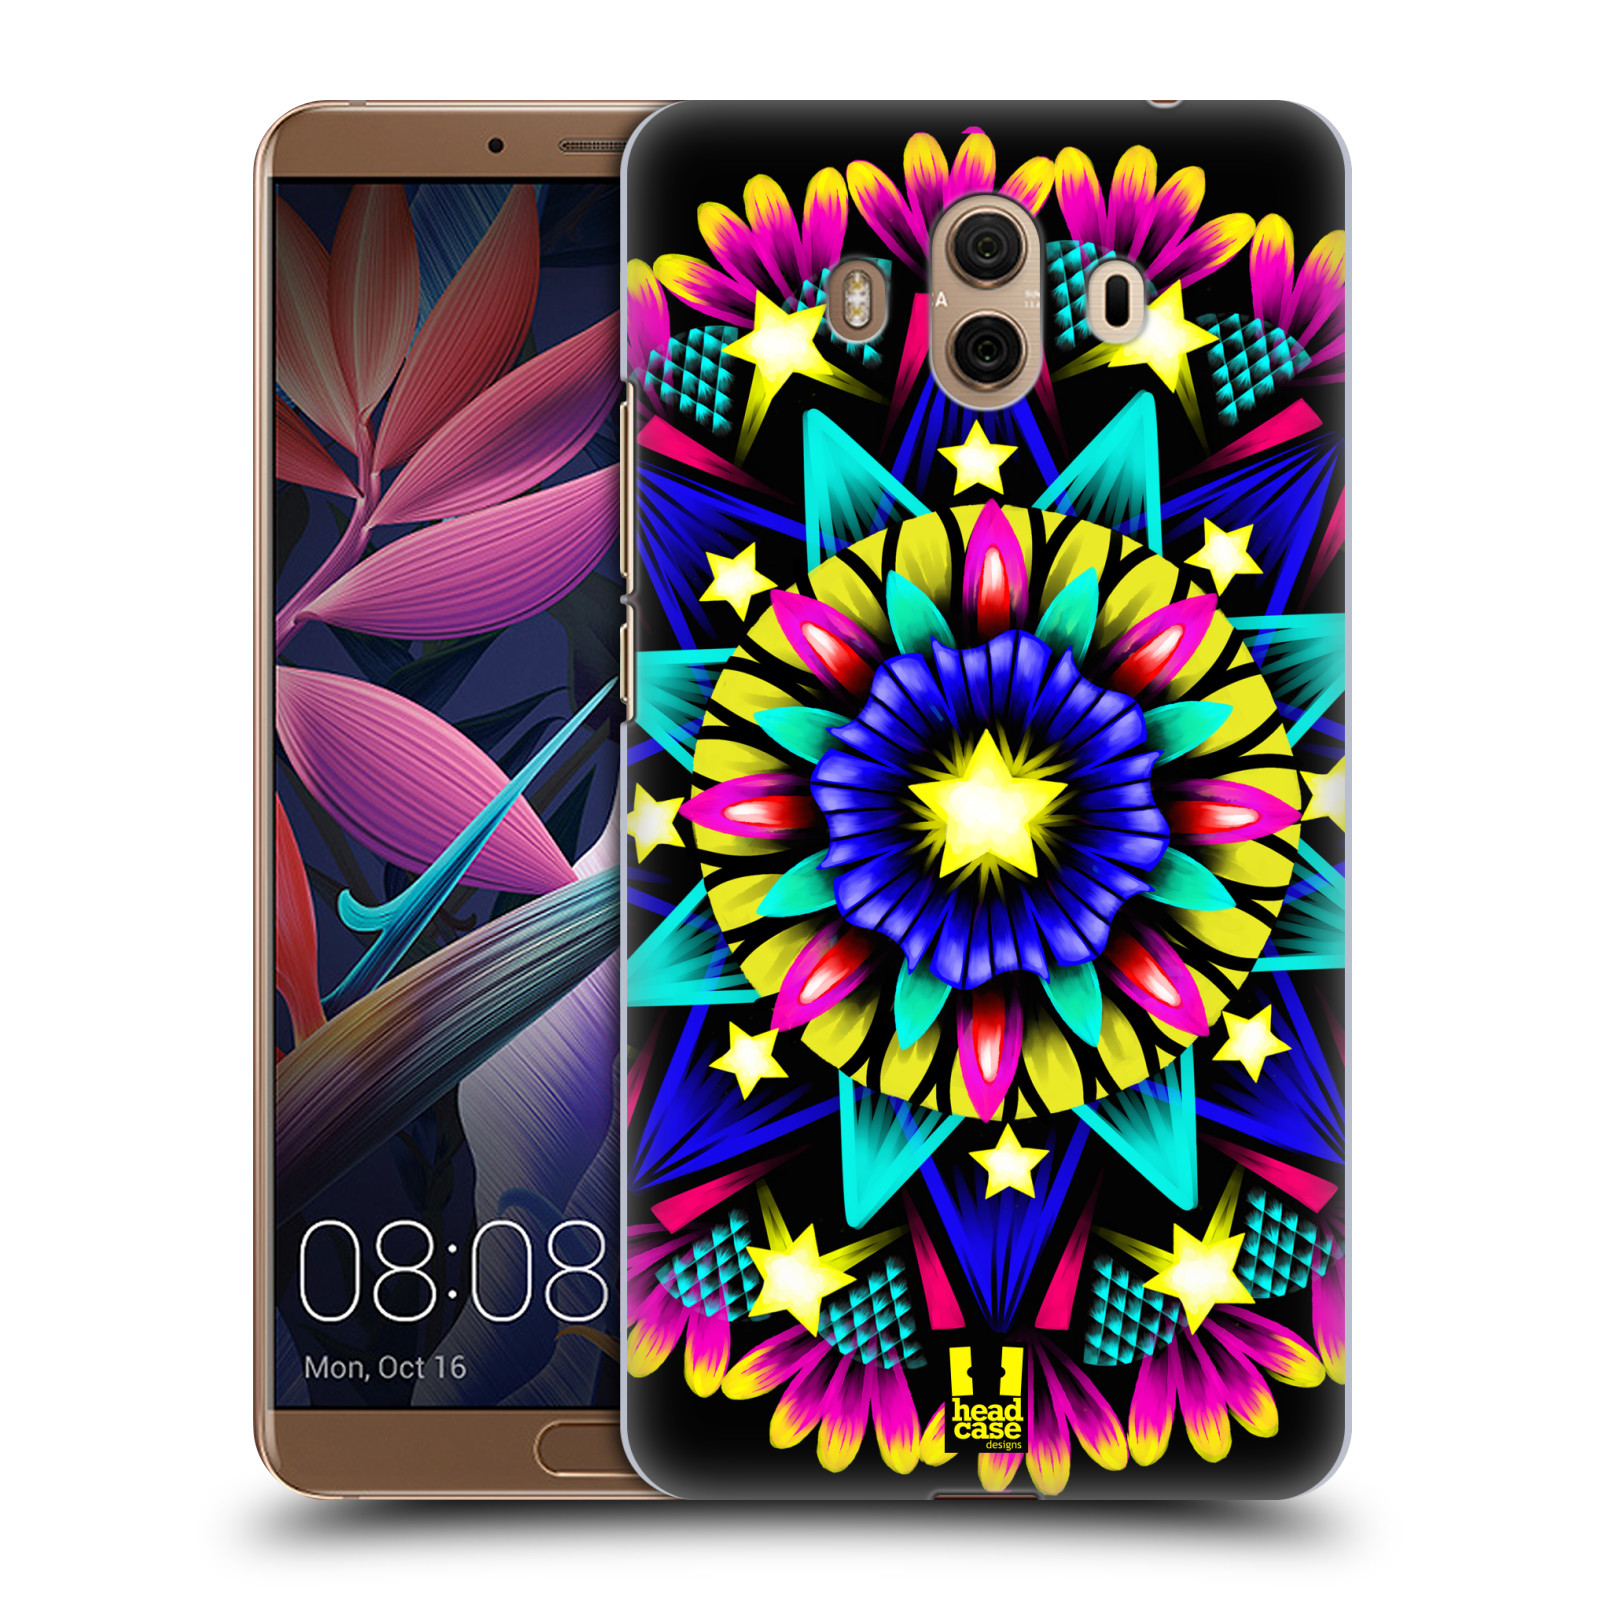 HEAD CASE plastový obal na mobil Huawei Mate 10 vzor Indie Mandala kaleidoskop barevný vzor HVĚZDA